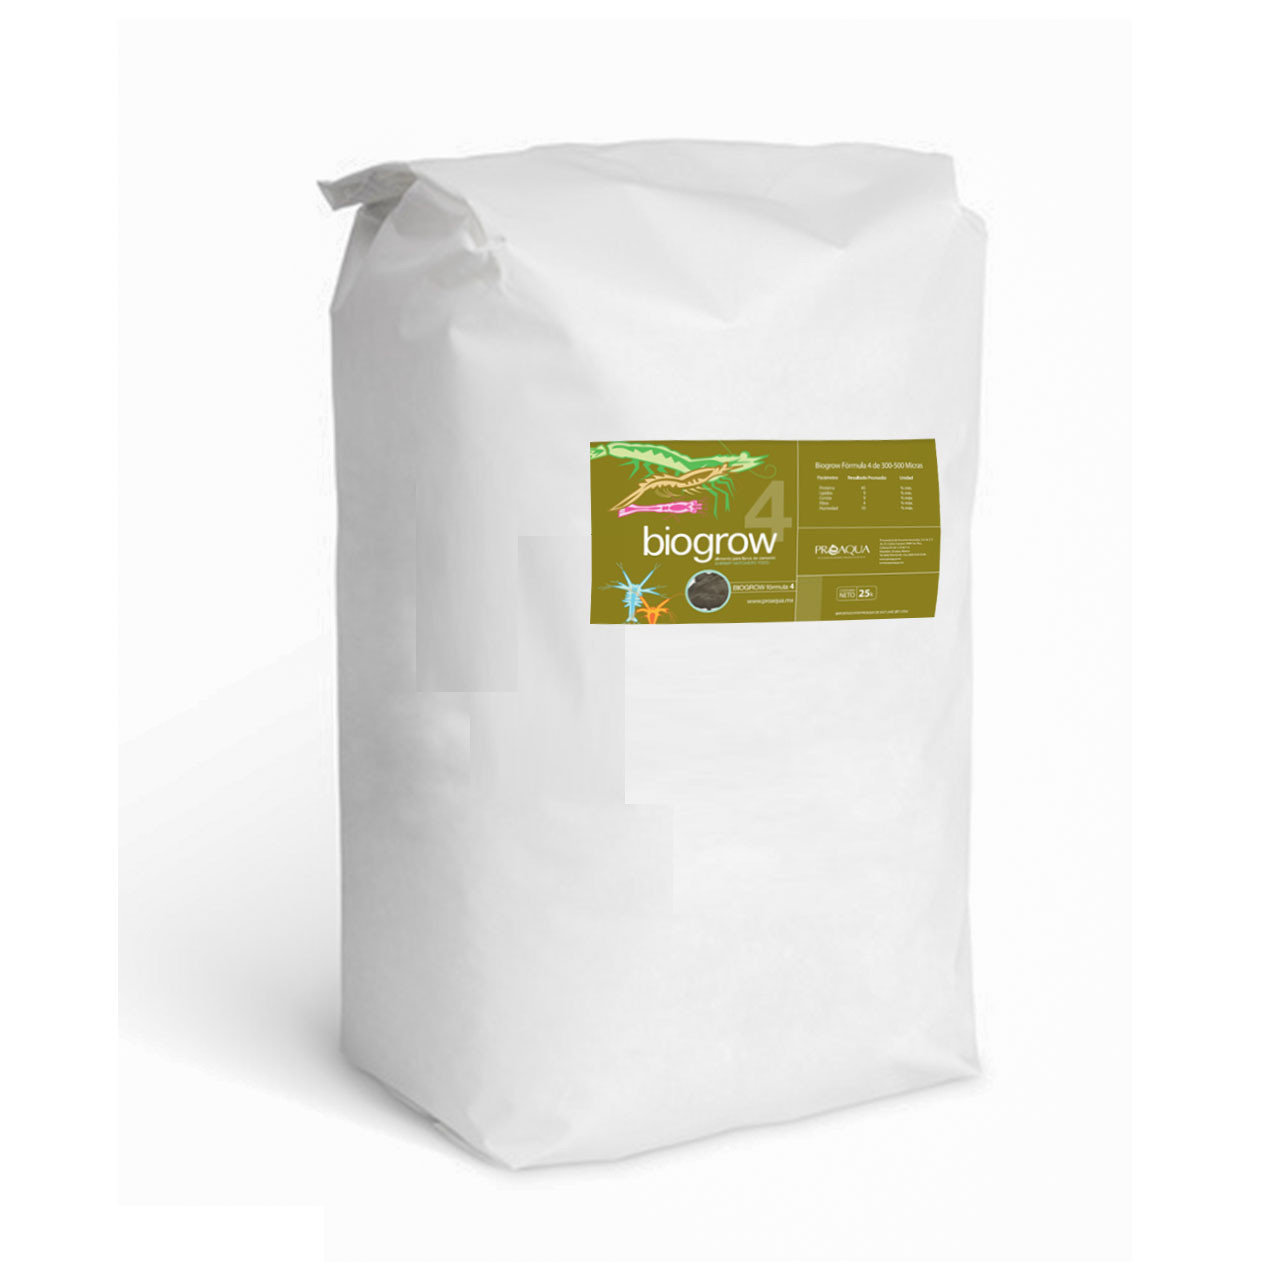 Biogrow® Formula 4 es un alimento nutricionalmente balanceada para satisfacer las necesidades específicas de los estadios larvarios tempranos